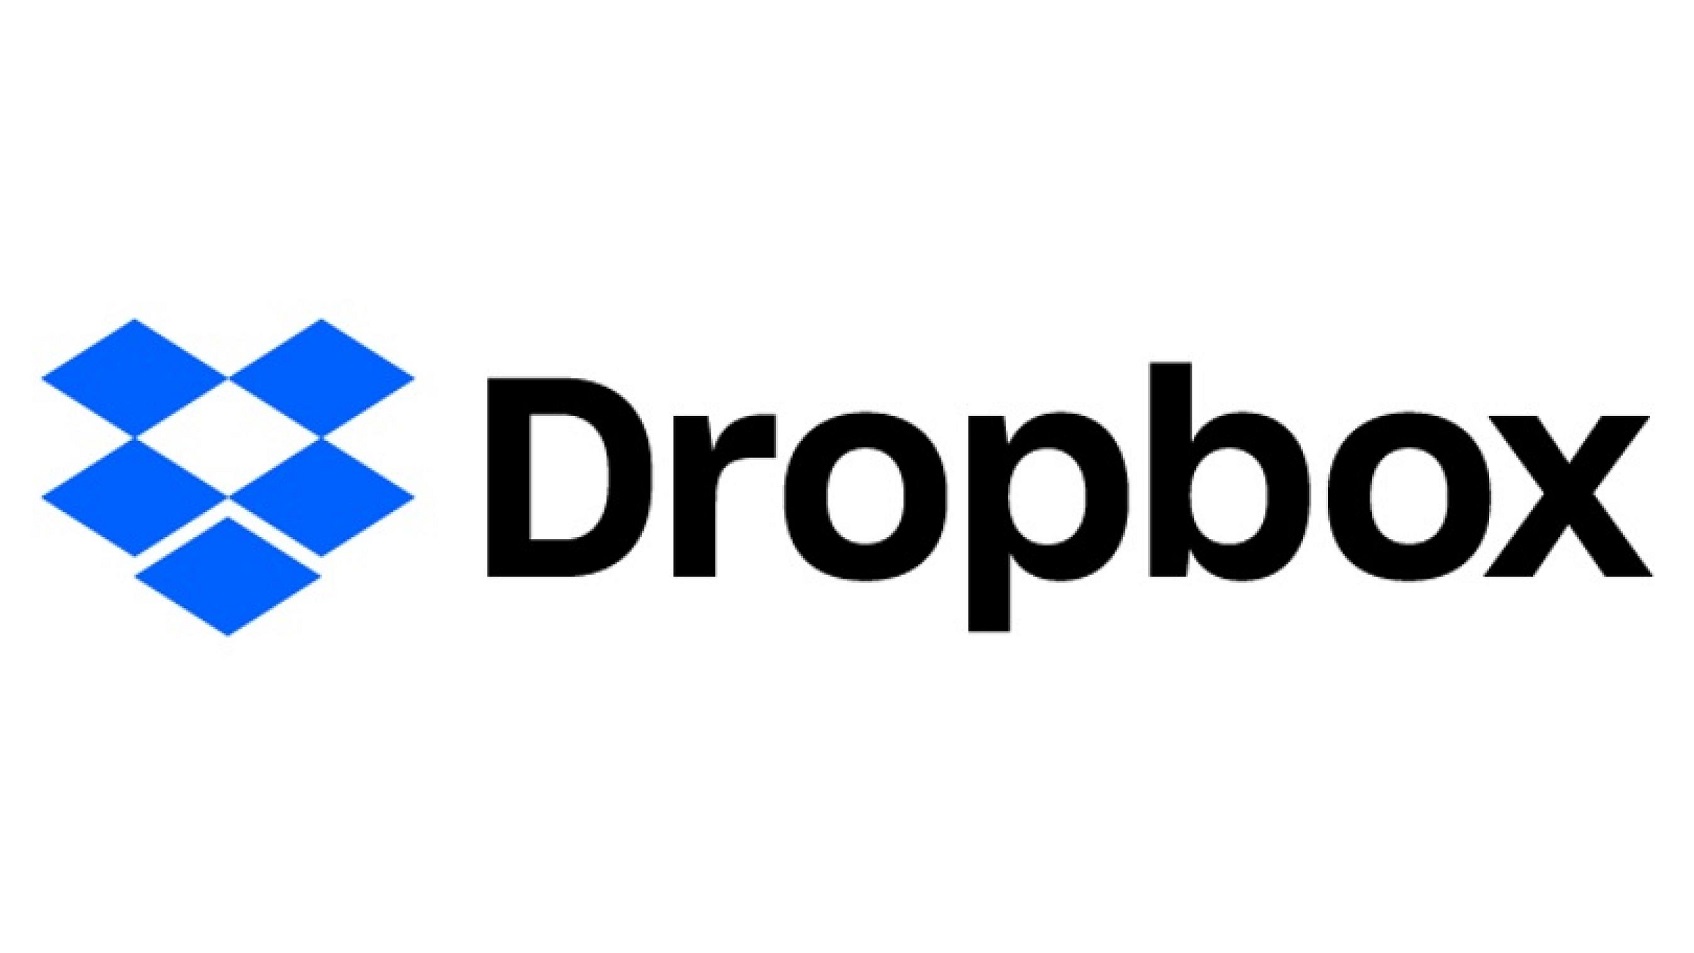 dropbox com support